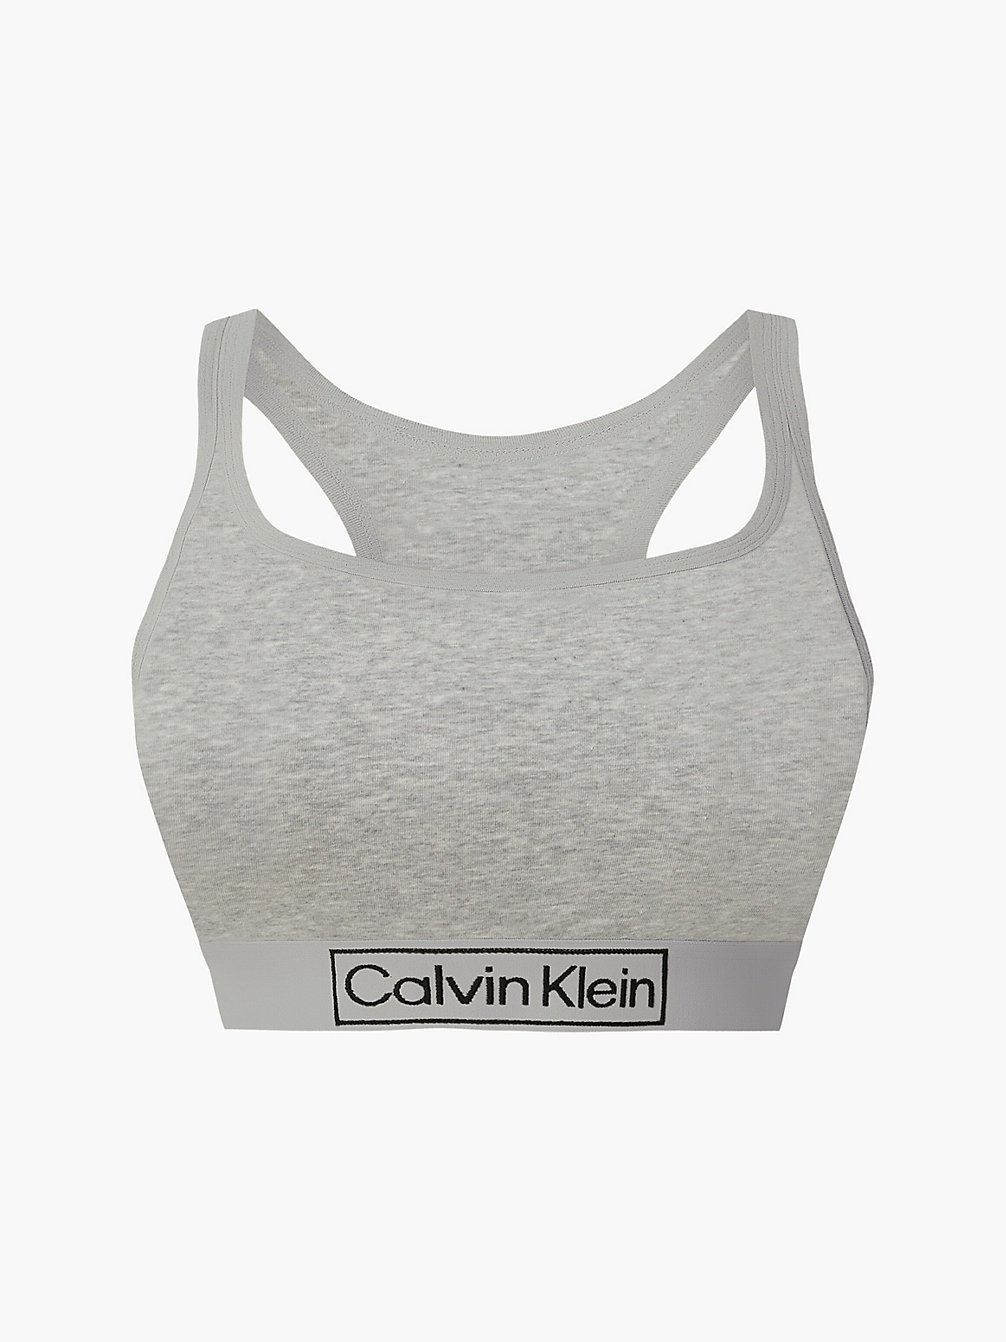 GREY HEATHER Plus Size Bralette - Reimagined Heritage undefined women Calvin Klein